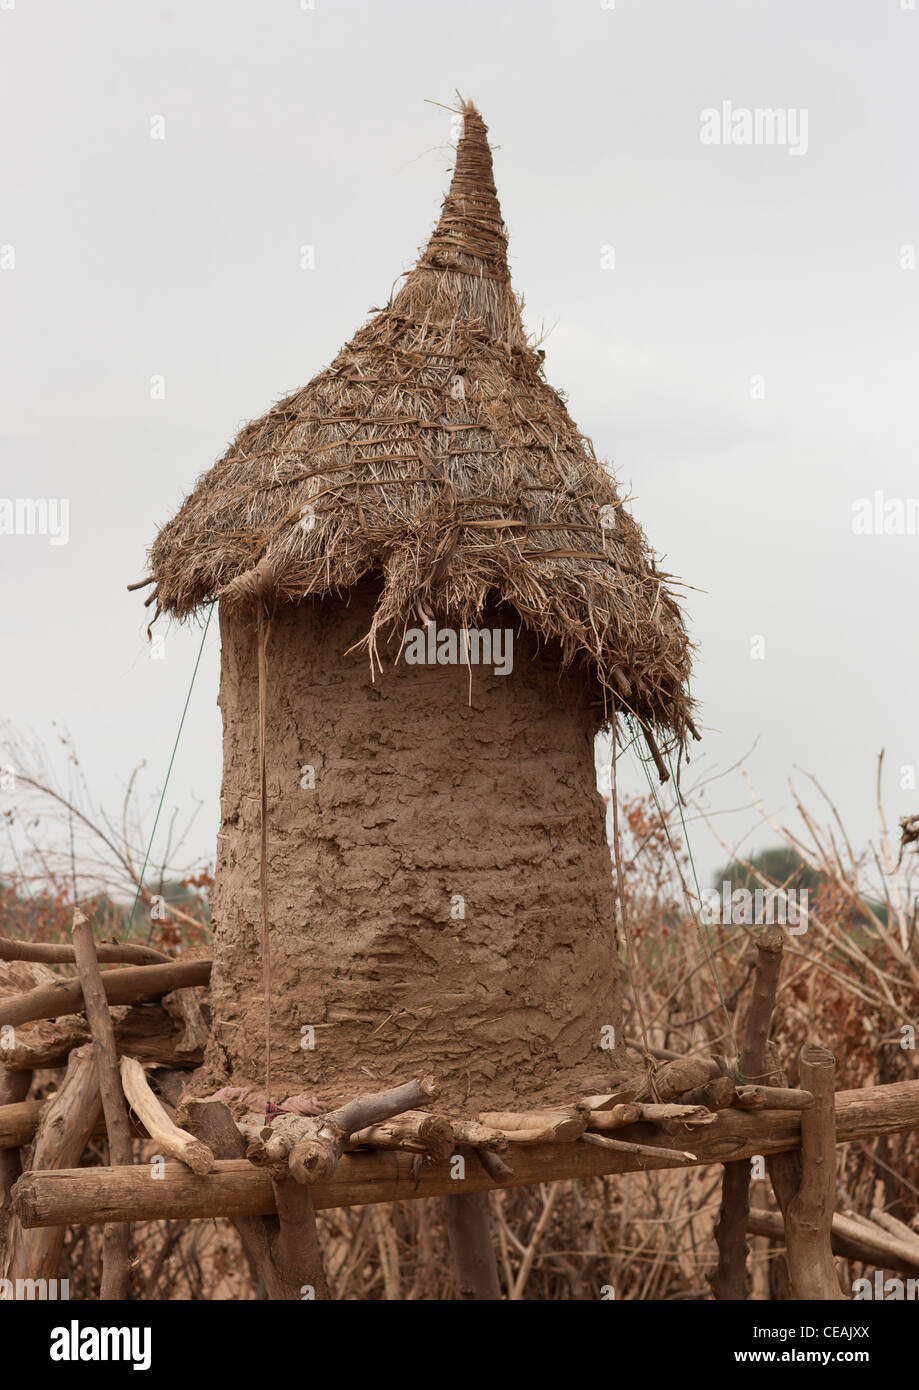 Dassanech tribe in Omo, Ethiopia Stock Photo